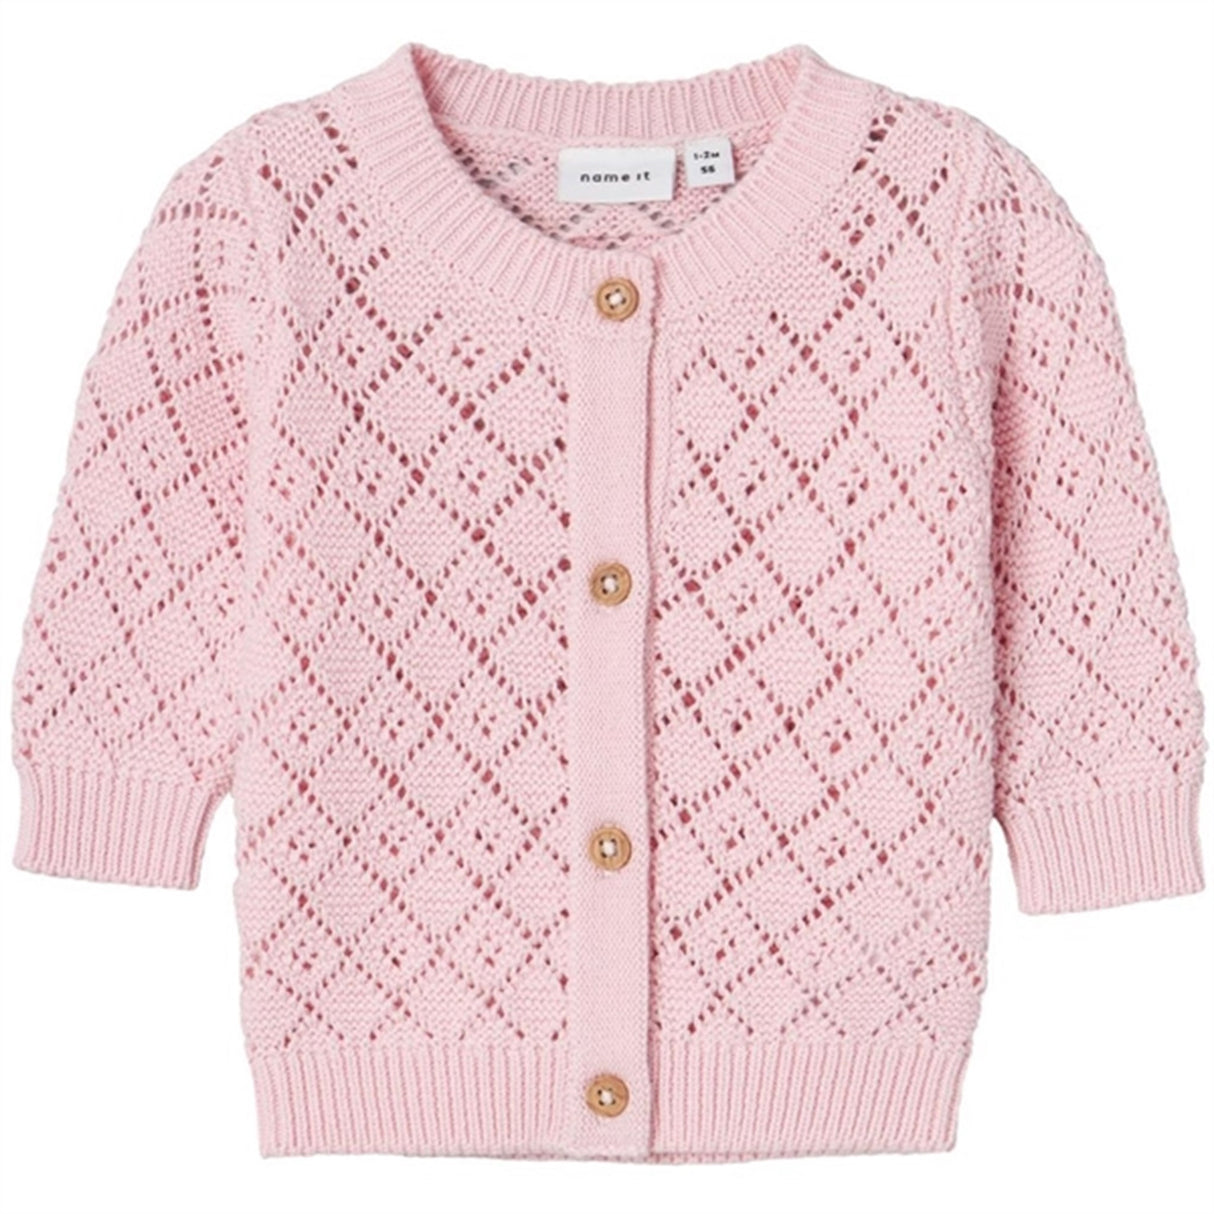 Name it Parfait Pink Desina Knit Cardigan